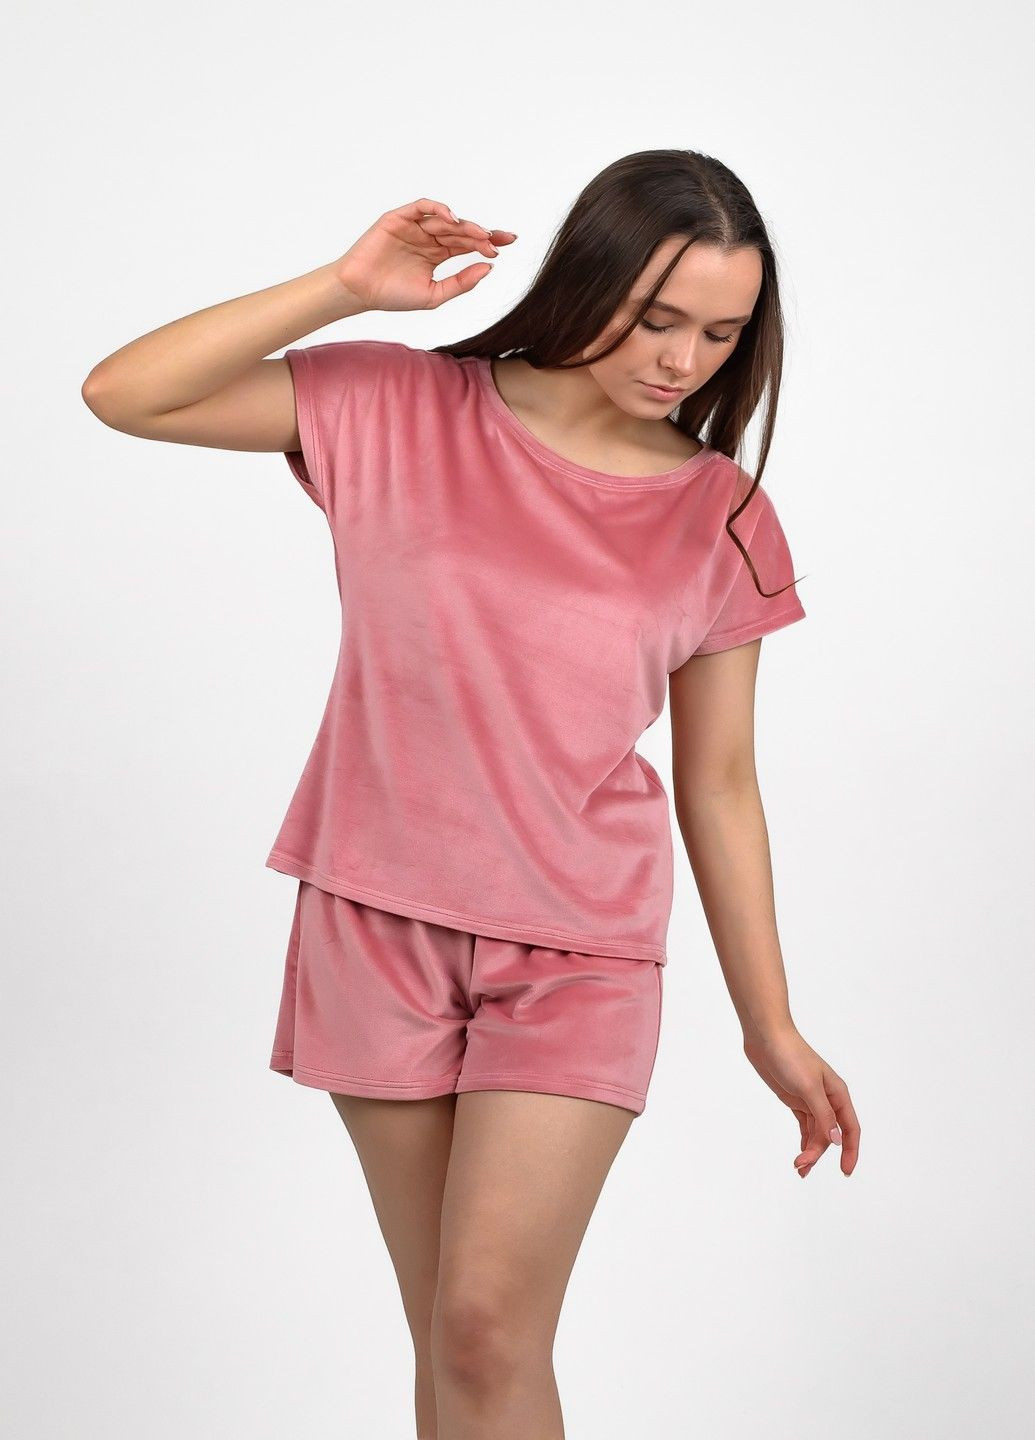 Рожева жіноча велюрова піжама NEL